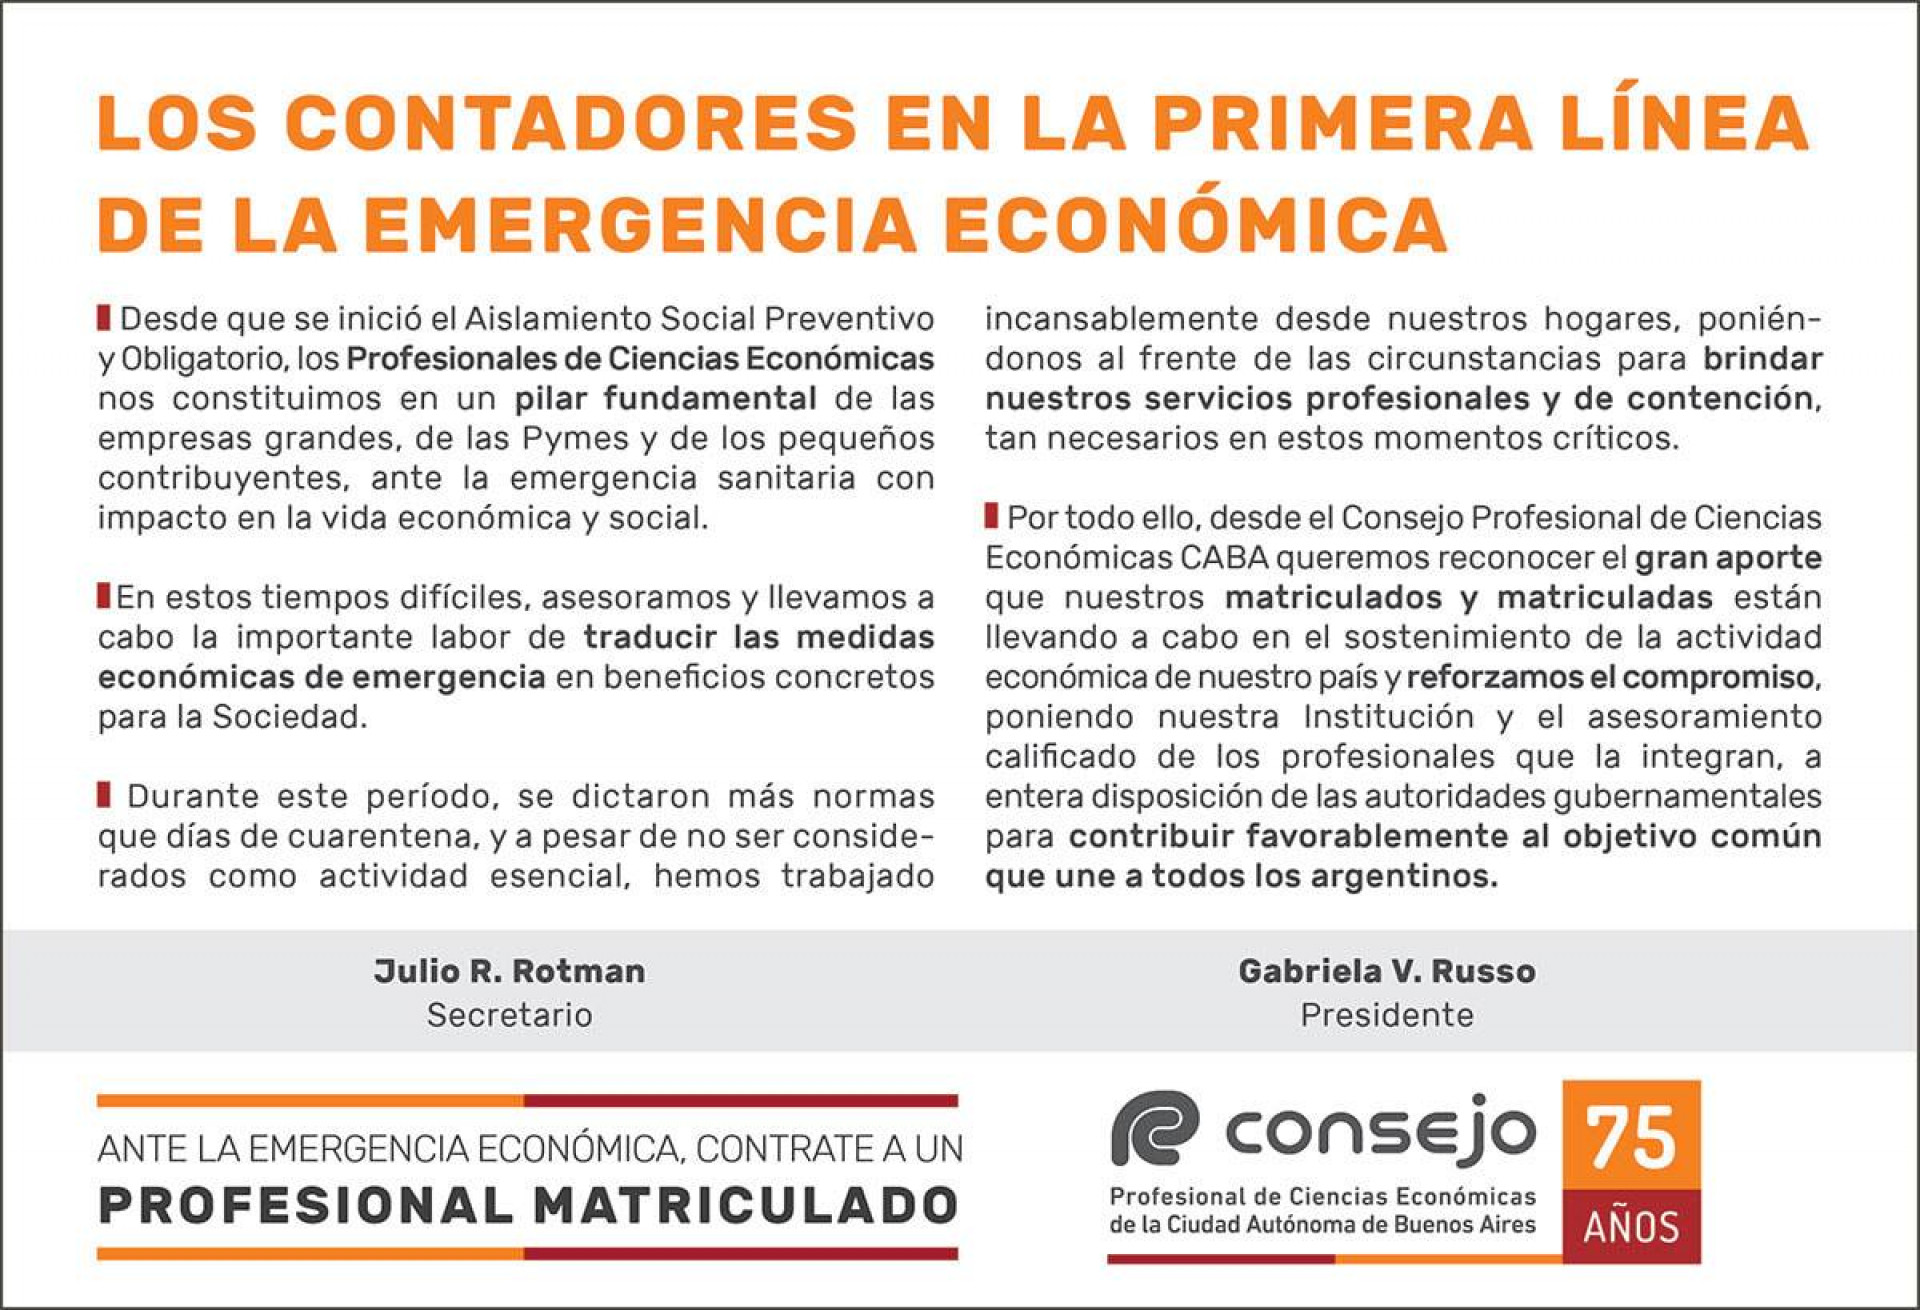 Publicado el 17/5/2020 en el Suplemento Económico del diario Clarín